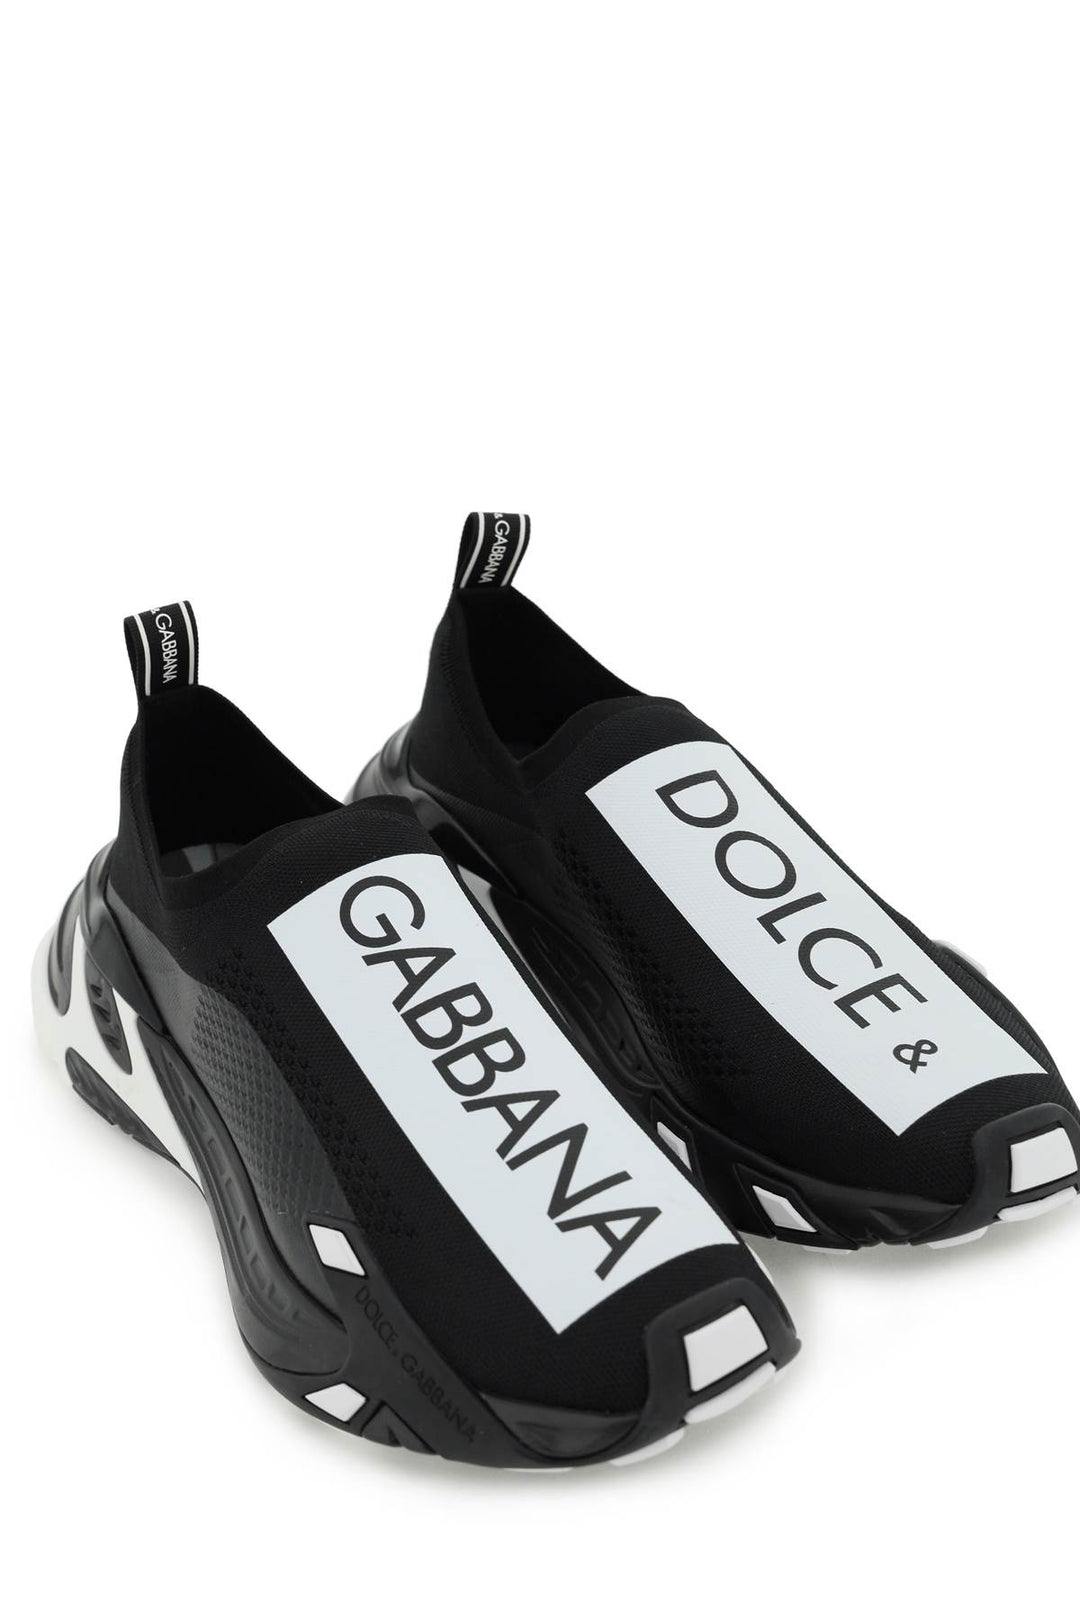 Sneakers Sorrento - Dolce & Gabbana - Uomo